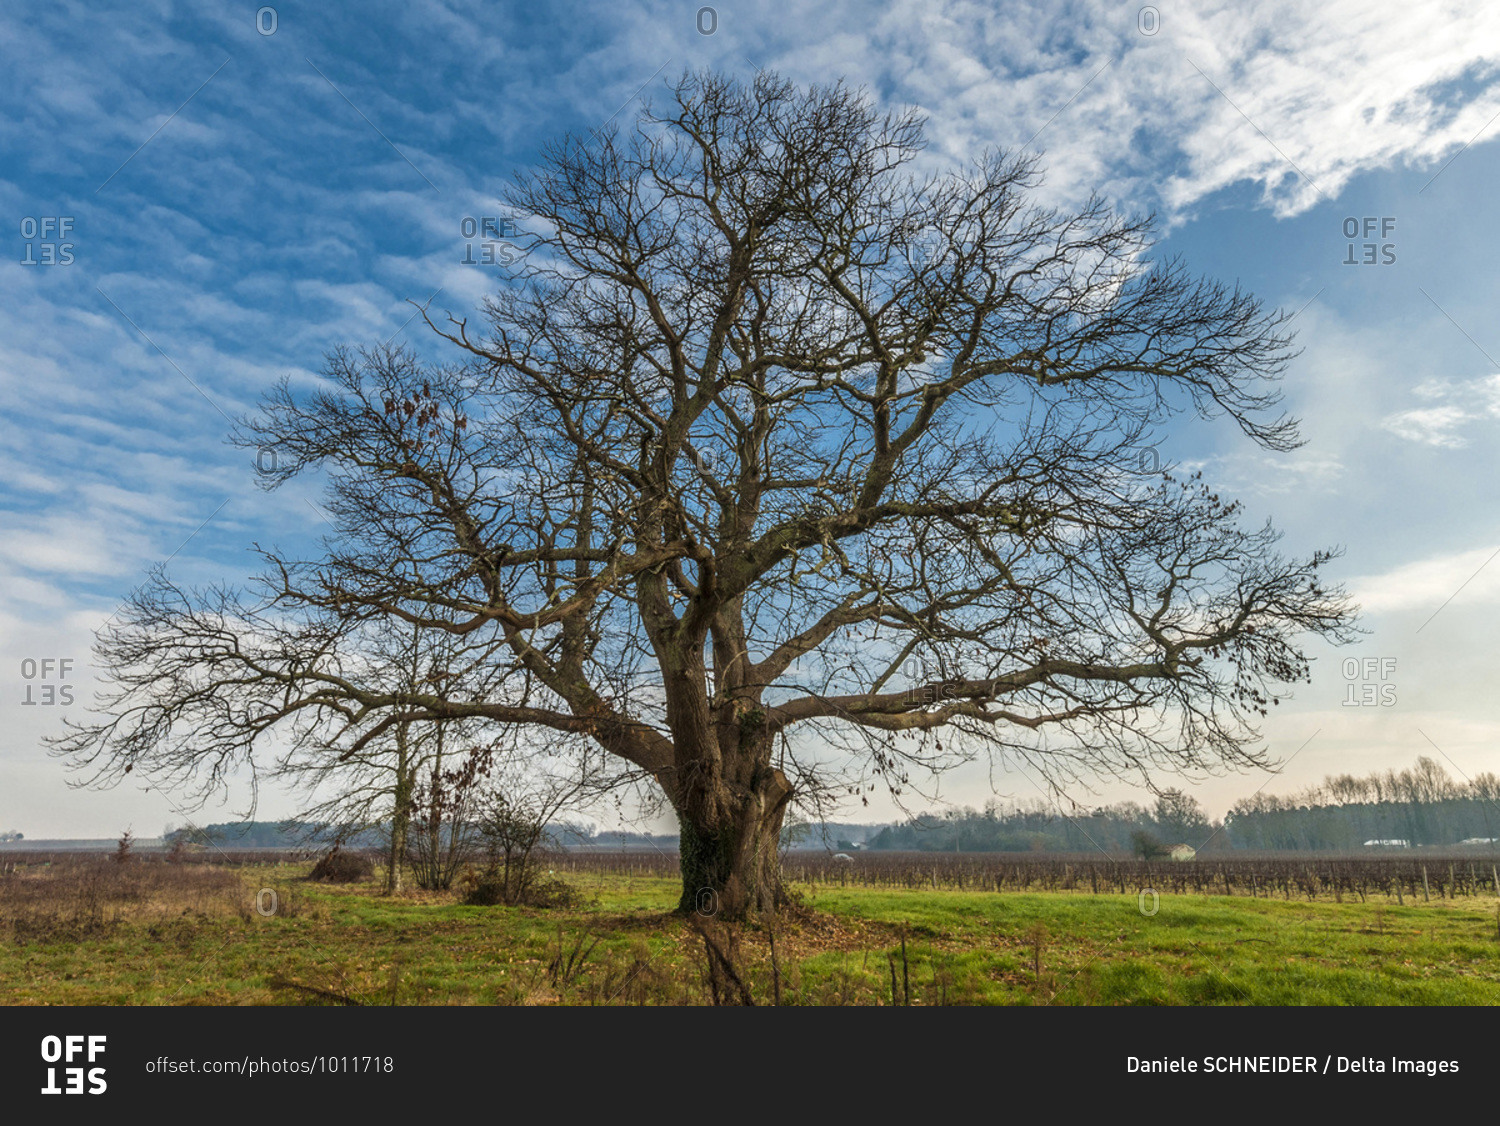 France, Gironde, Haute-Lande girondine, Hostens, old chestnut tree in the vines at Landras